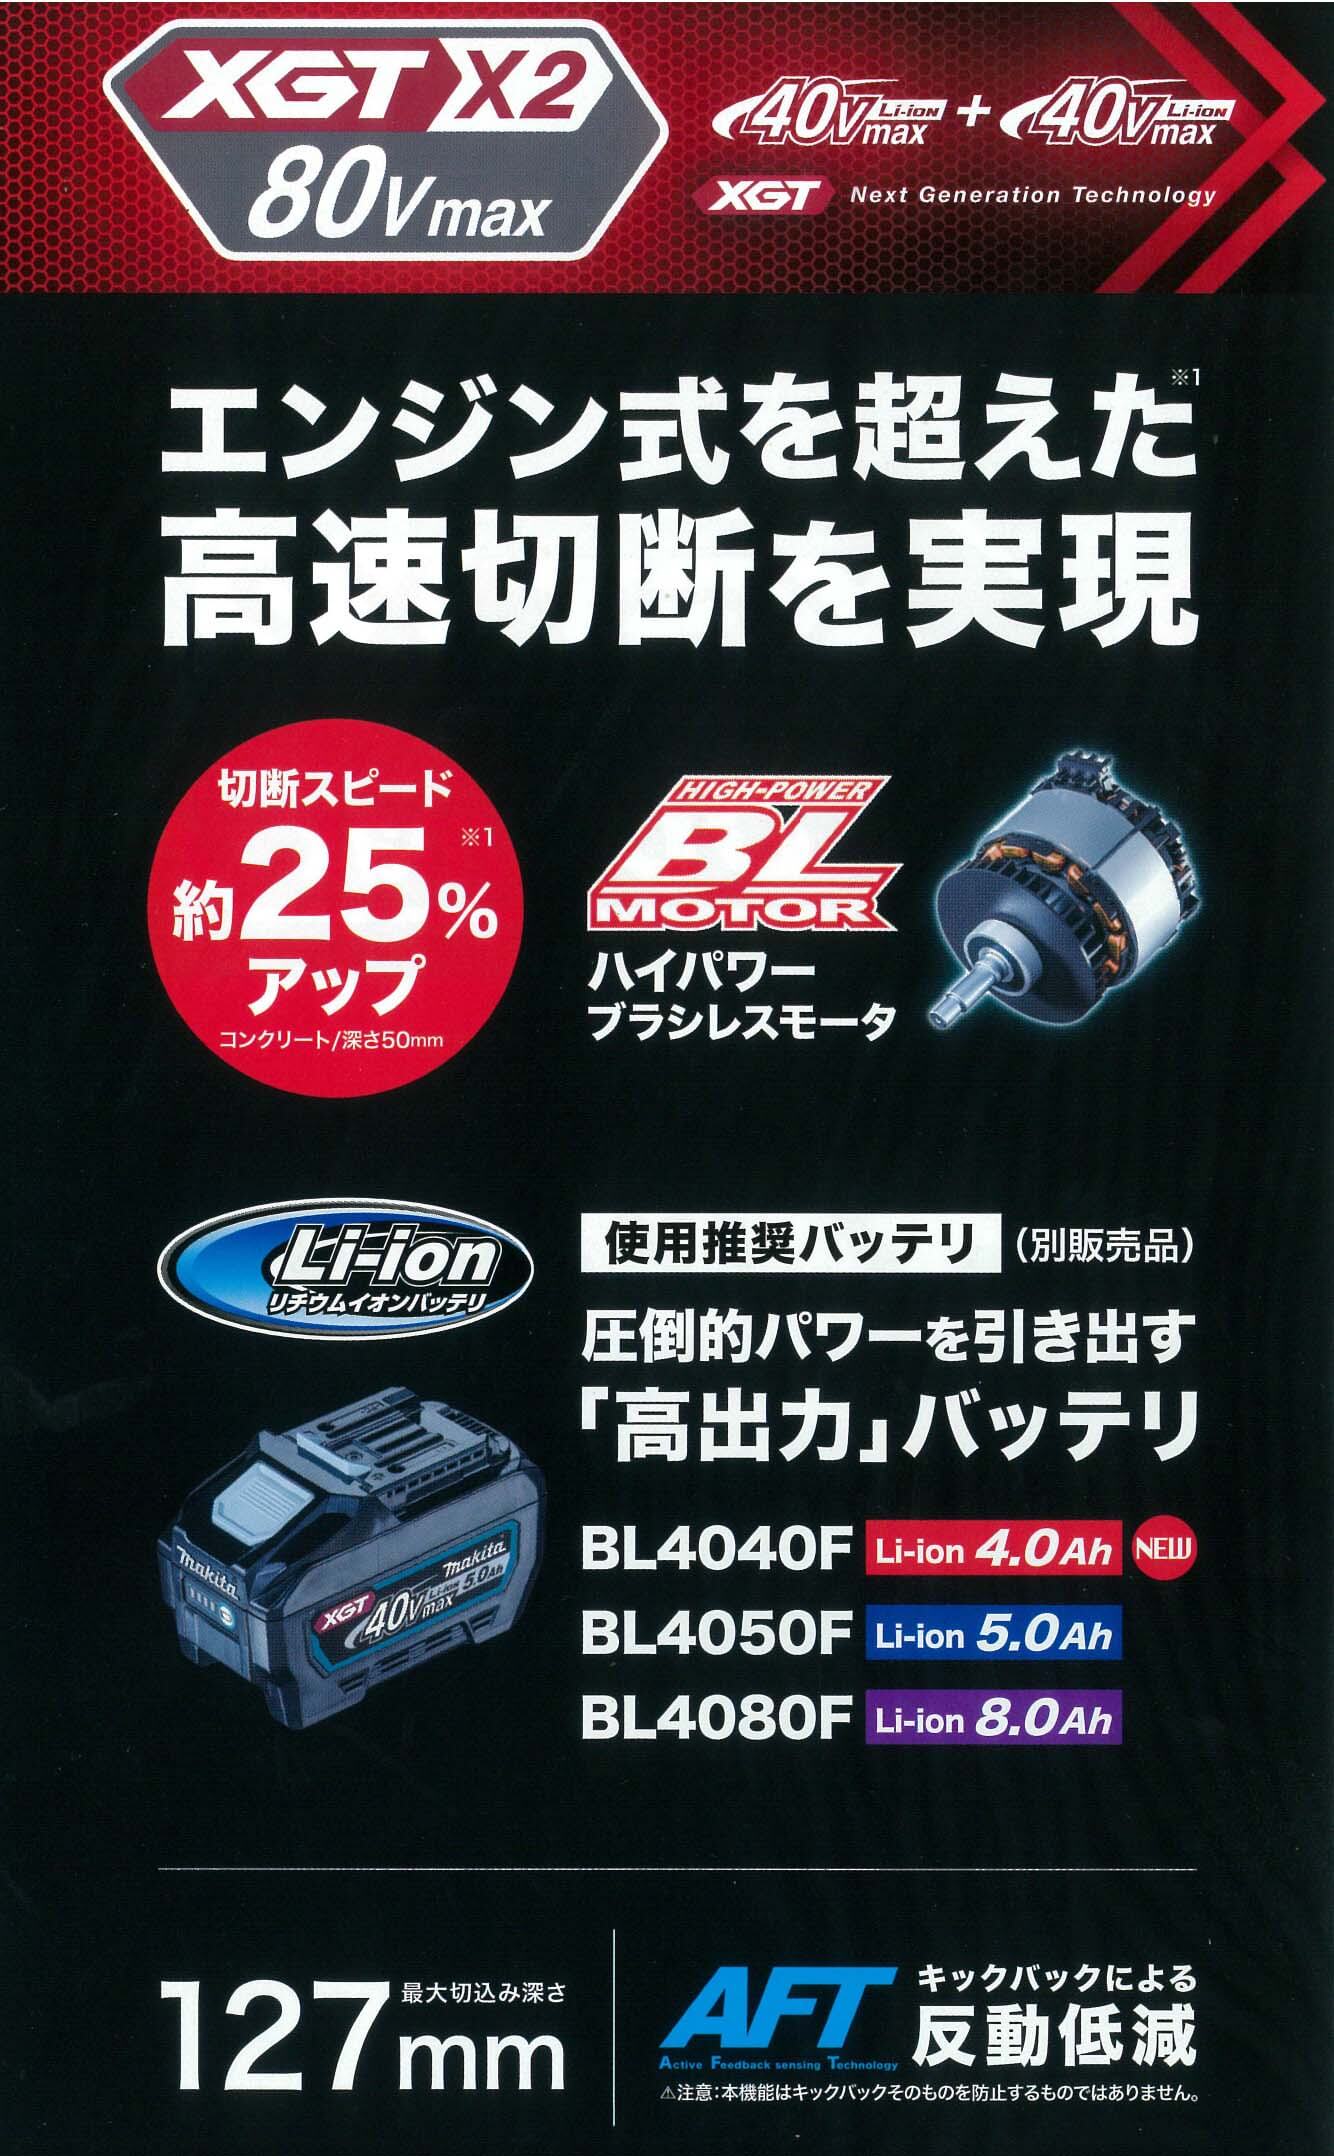 マキタ CE002GZ 80Vmax 355mm充電式パワーカッター (本体のみ/バッテリ・充電器・刃物別売) ウエダ金物【公式サイト】